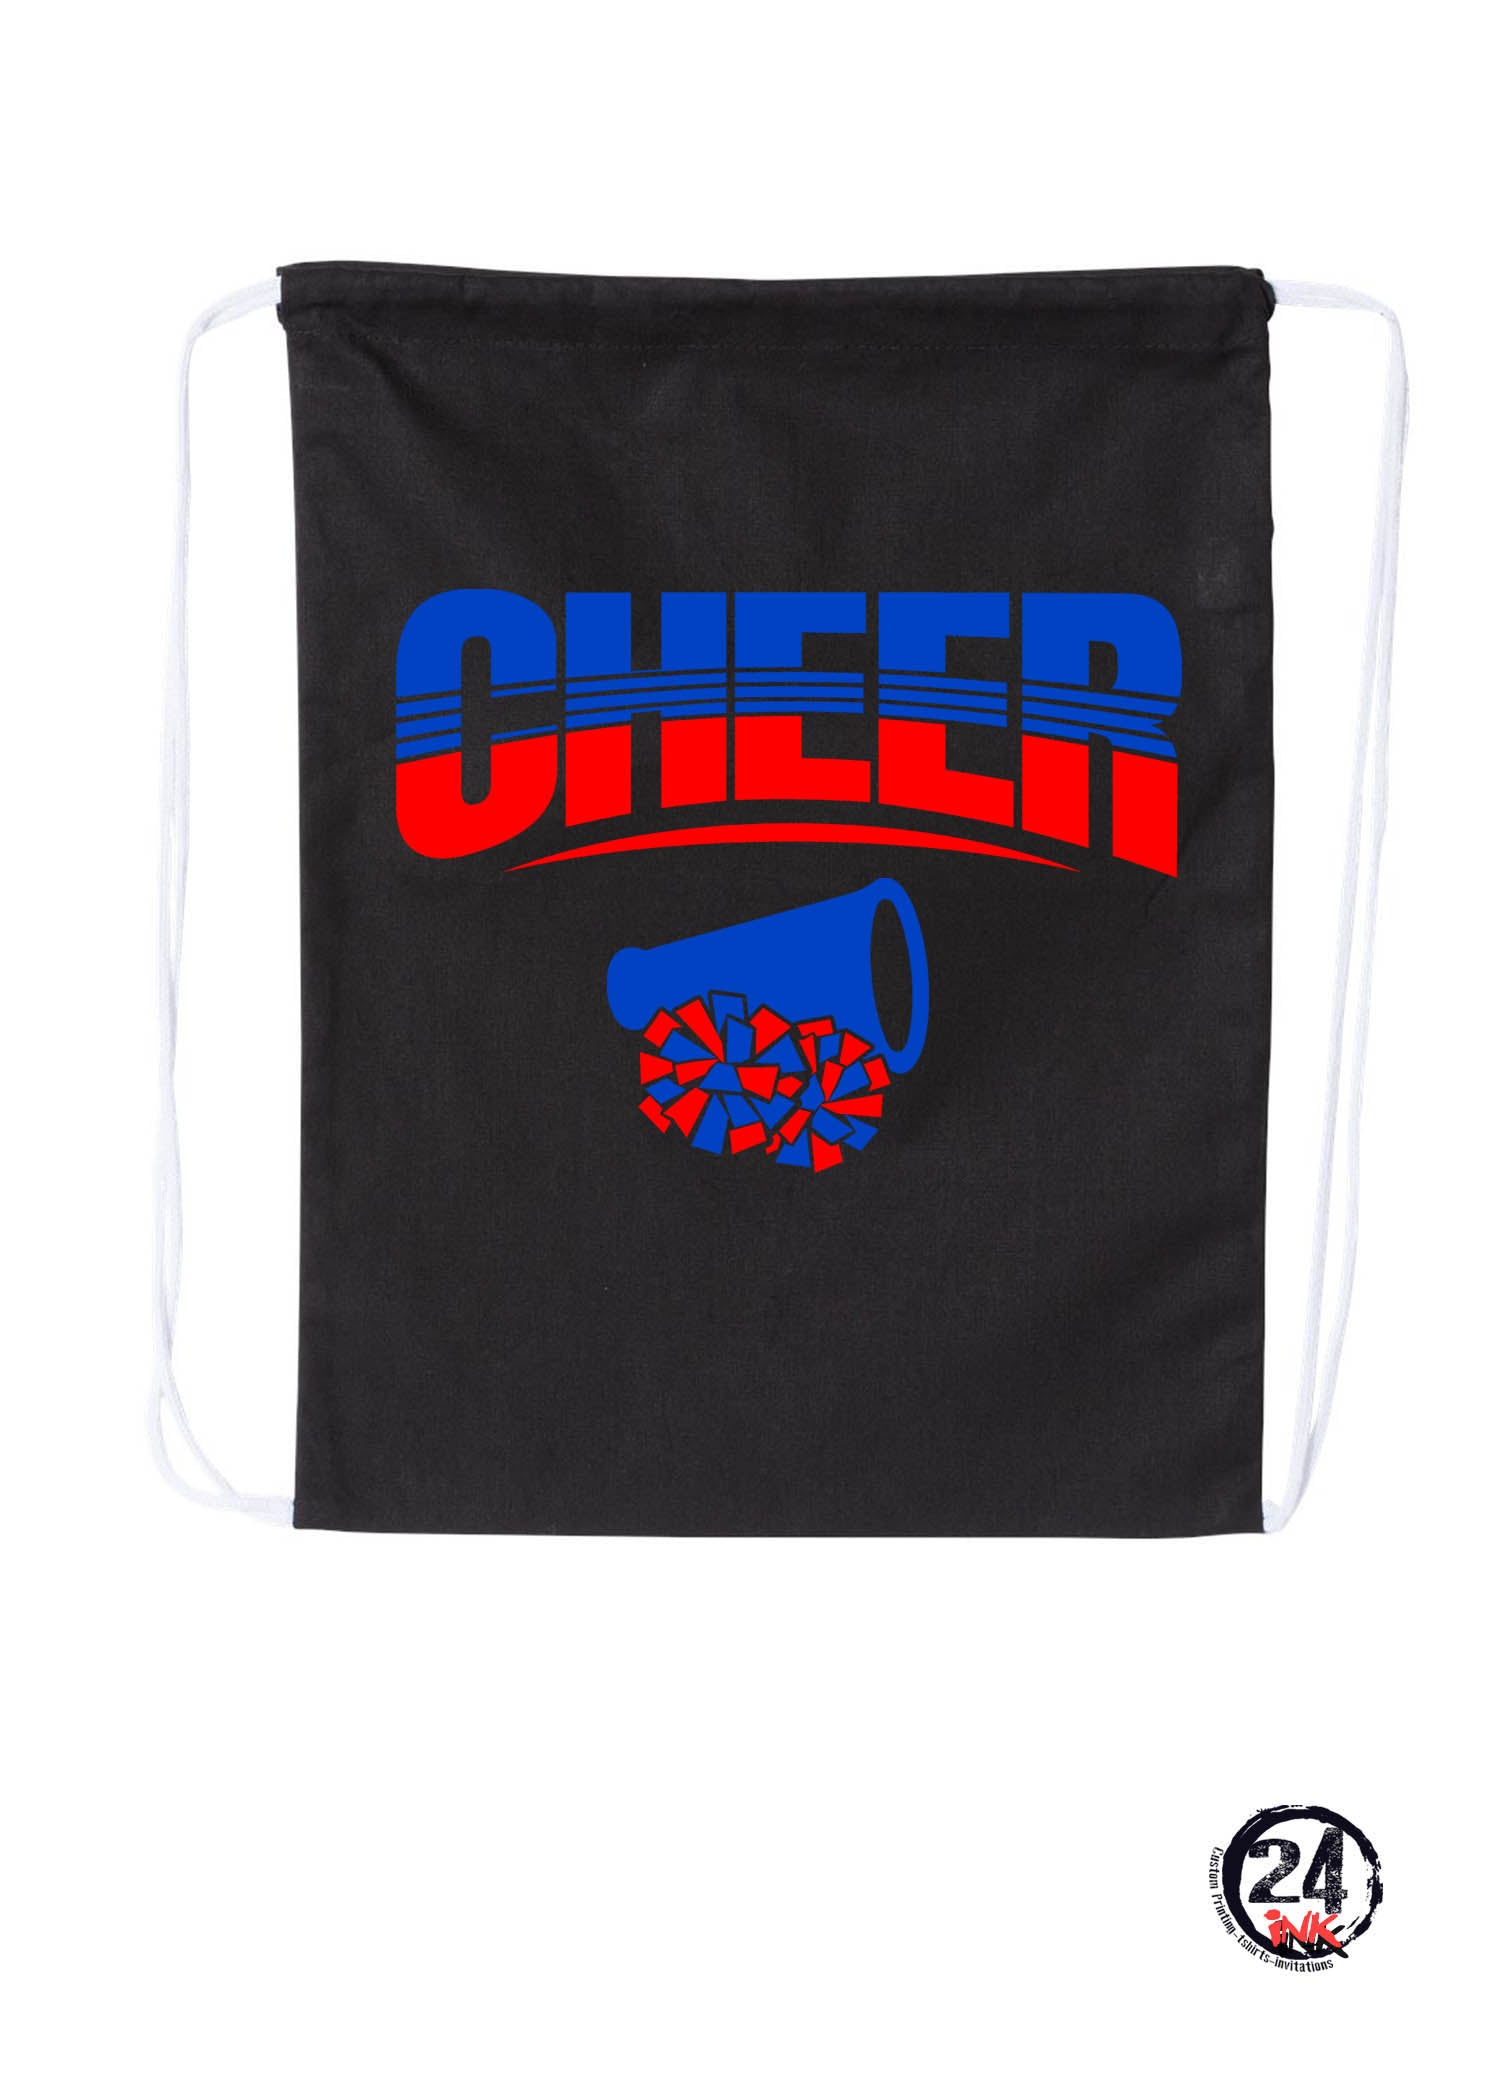 Cheer drawstring bag